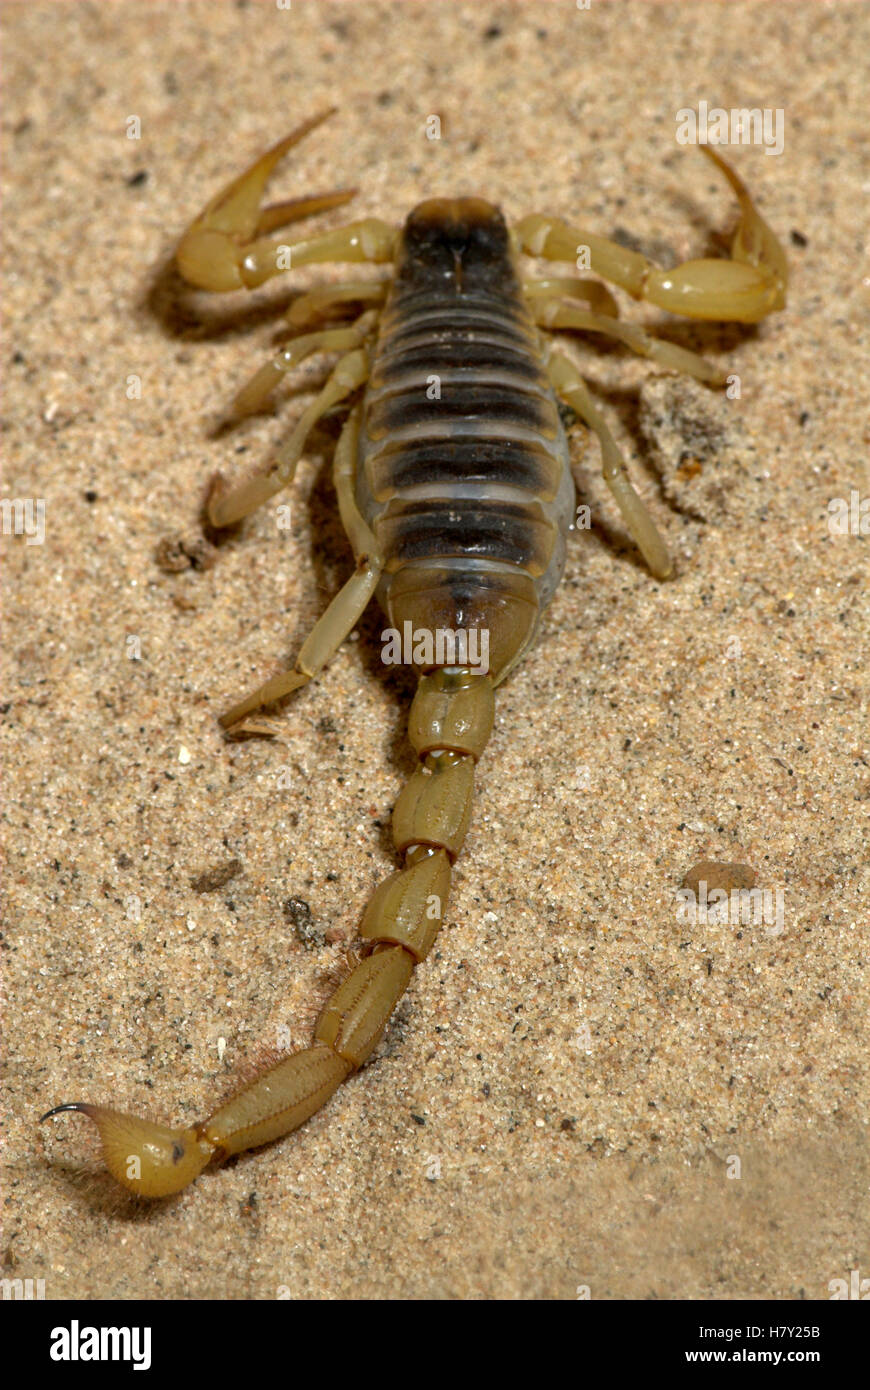 Scorpion Hadrurus arizonensis Arizona sting in tail Stock Photo